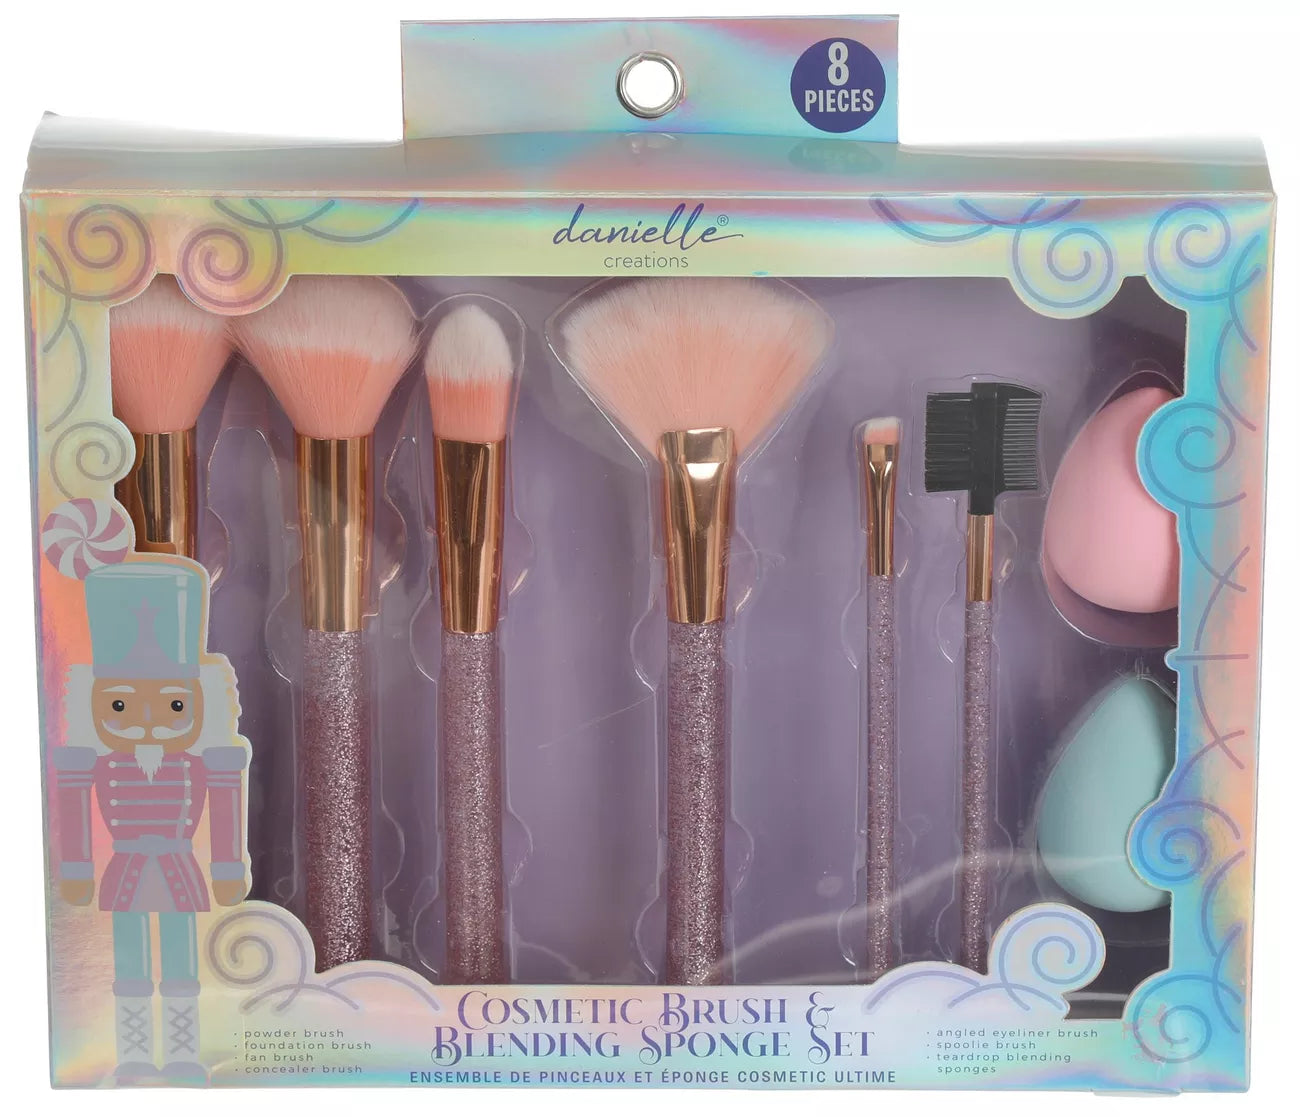 Danielle Creations Cosmetic Brush & Blending Sponge Gift Set